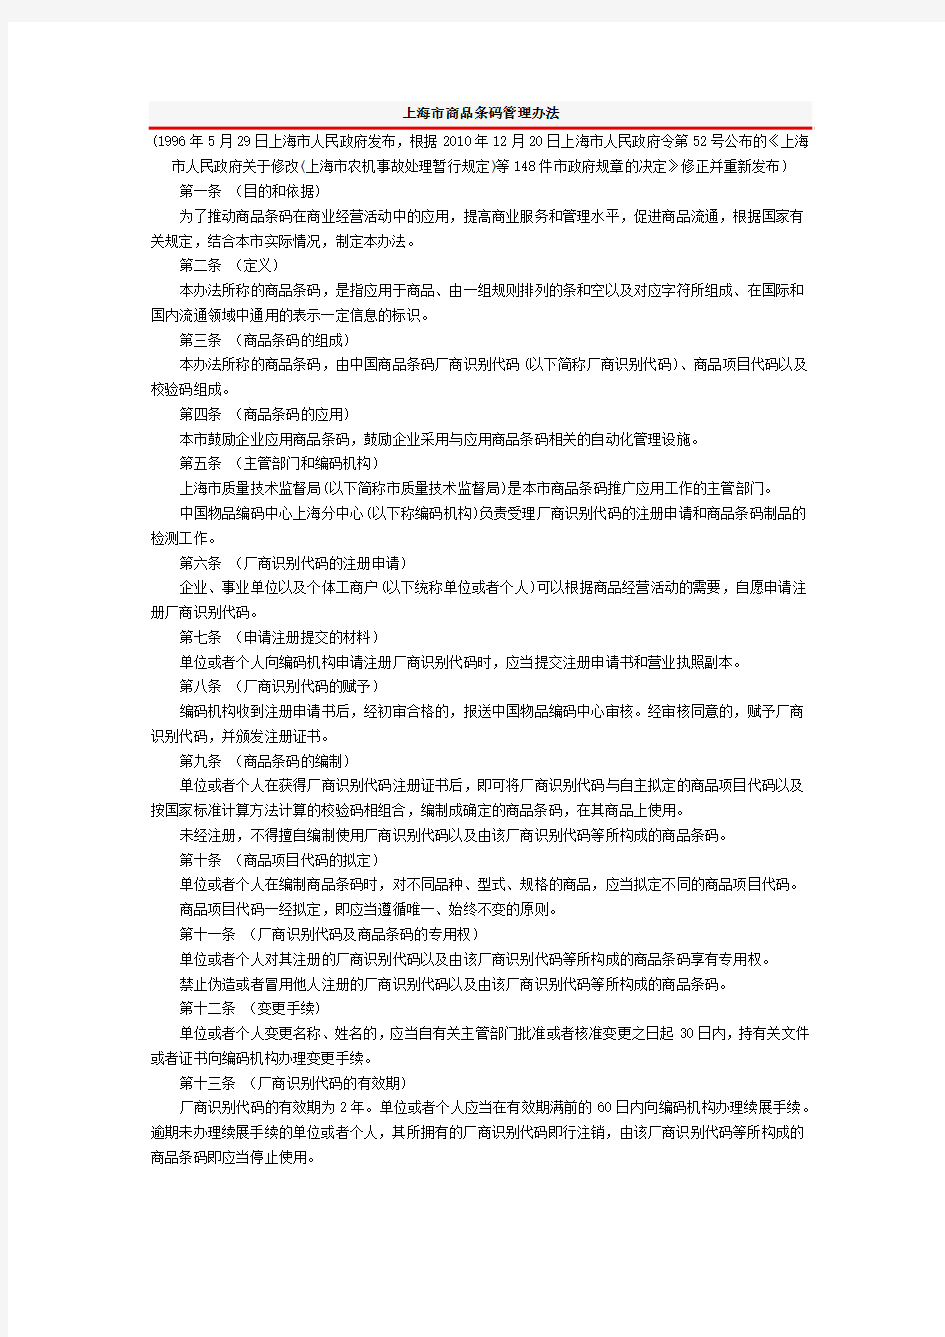 上海市商品条码管理办法